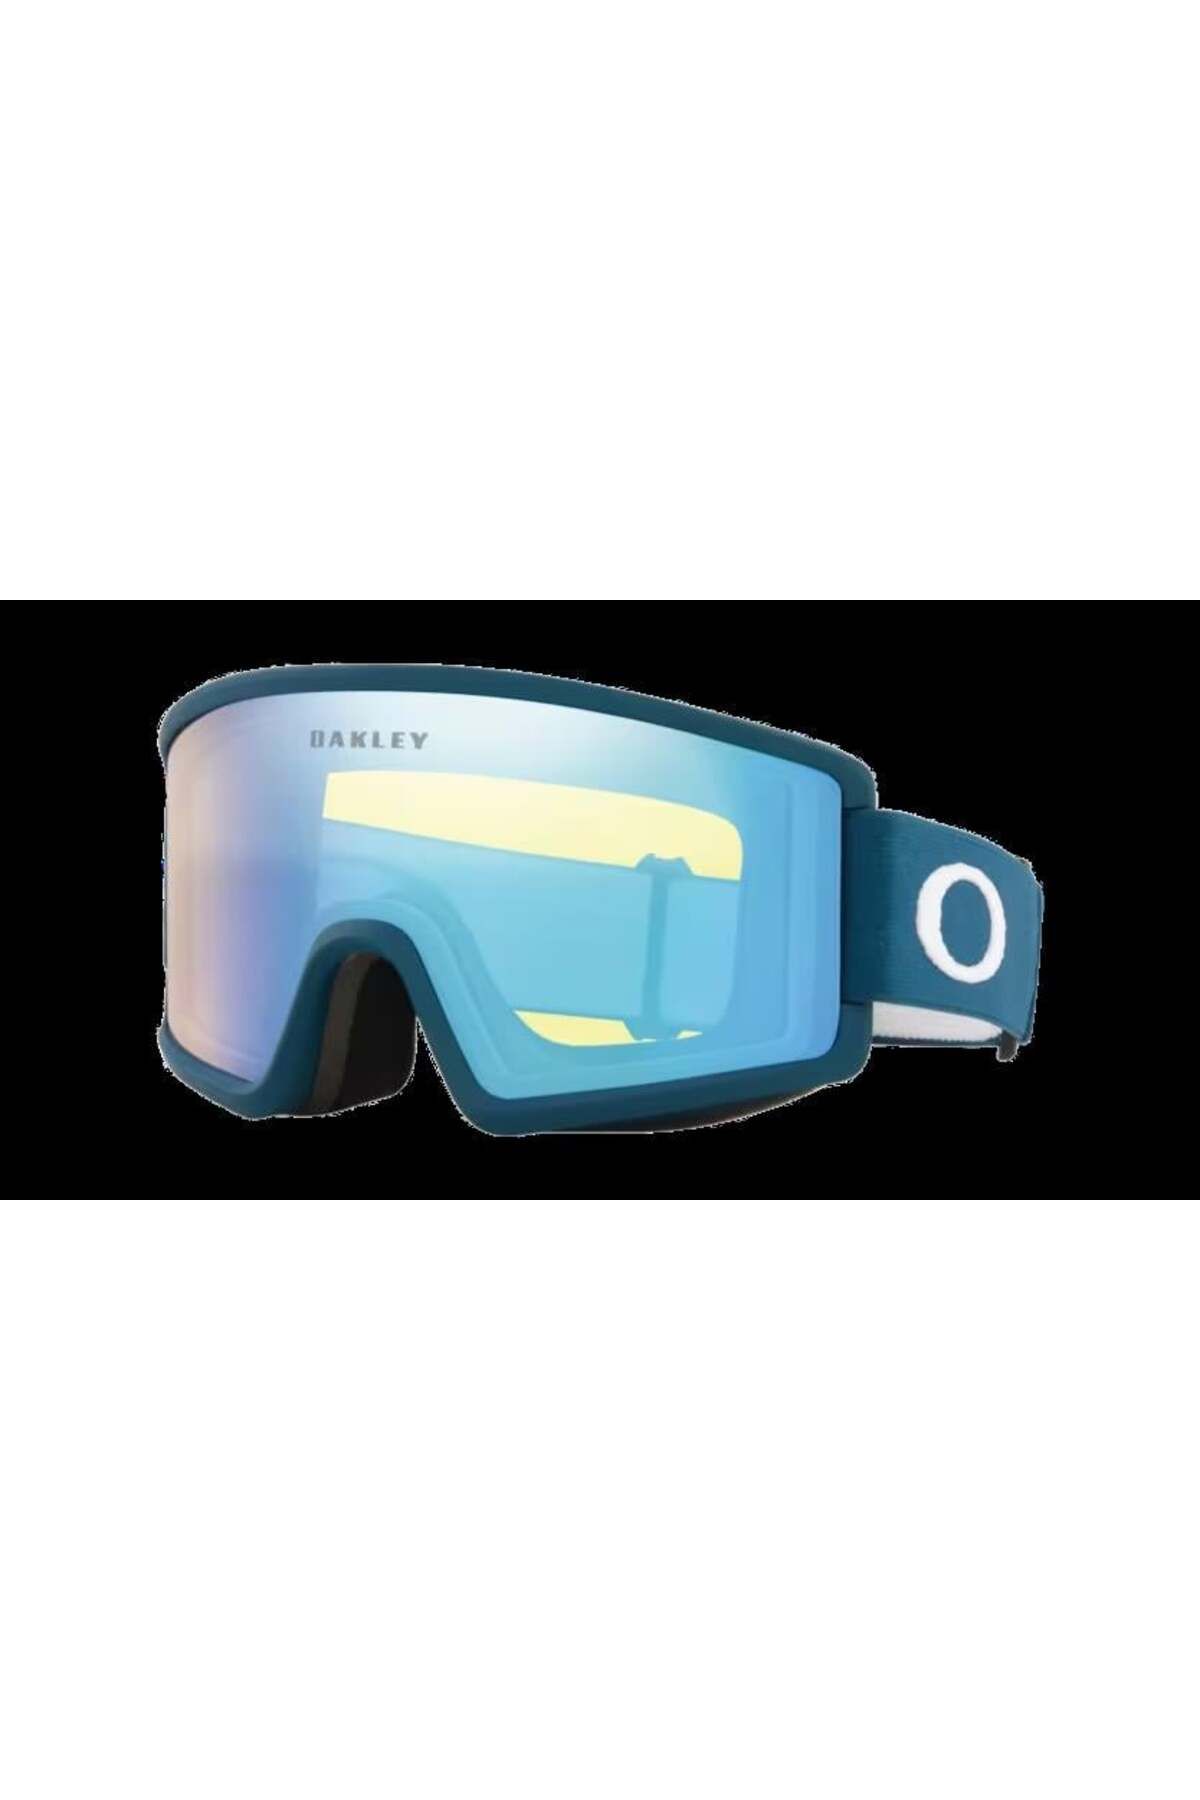 Oakley 7121 712110 0 Kayak Gözlüğü Güneş Gözlüğü